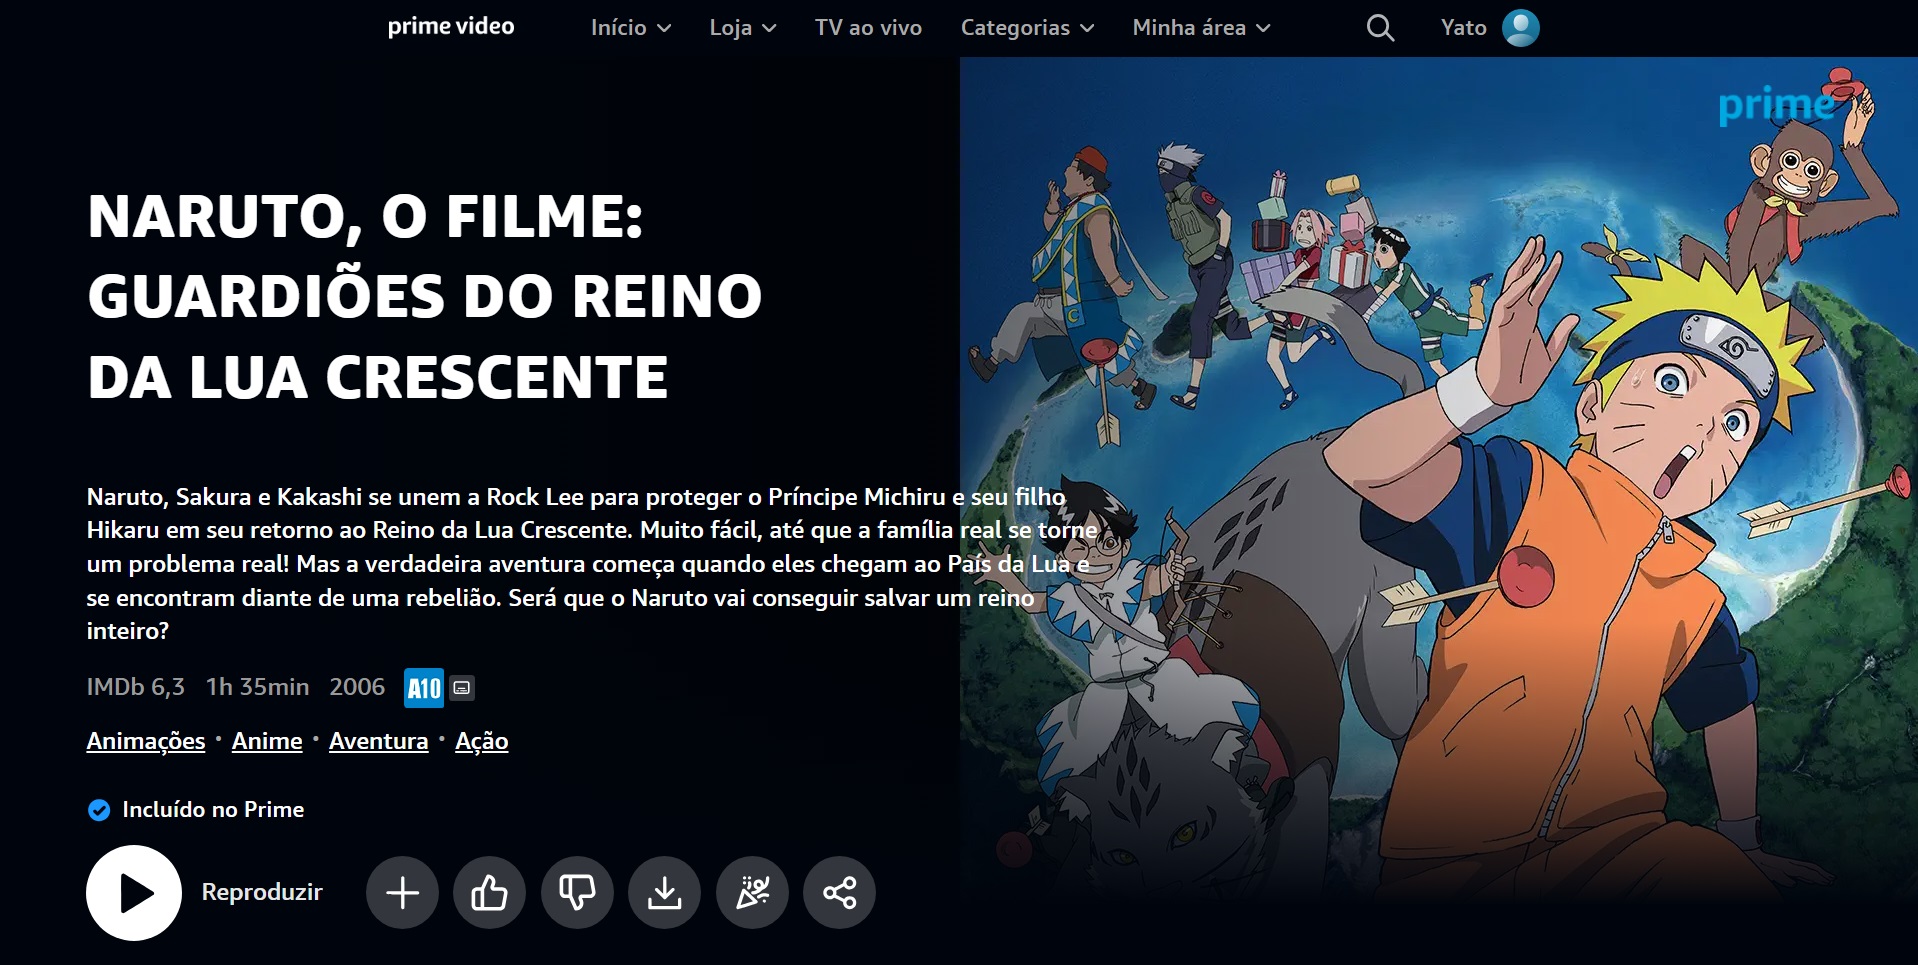 Yato on X: Naruto Shippuden já está disponível na @PrimeVideoBR. 1ª  temporada completa com dublagem e legendas.  / X